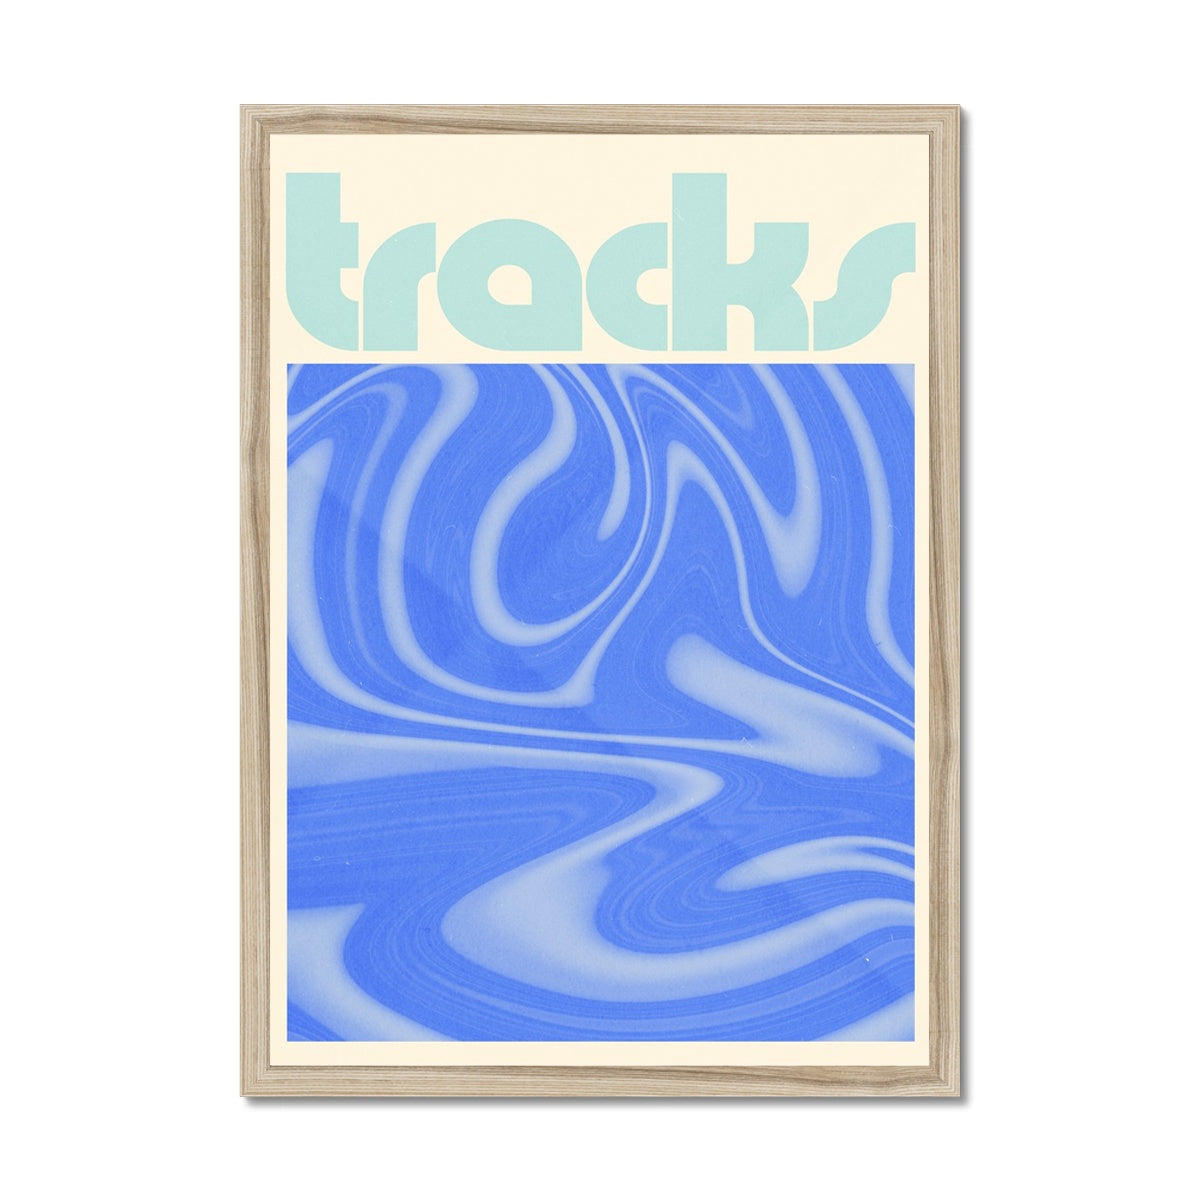 tracks Framed Print